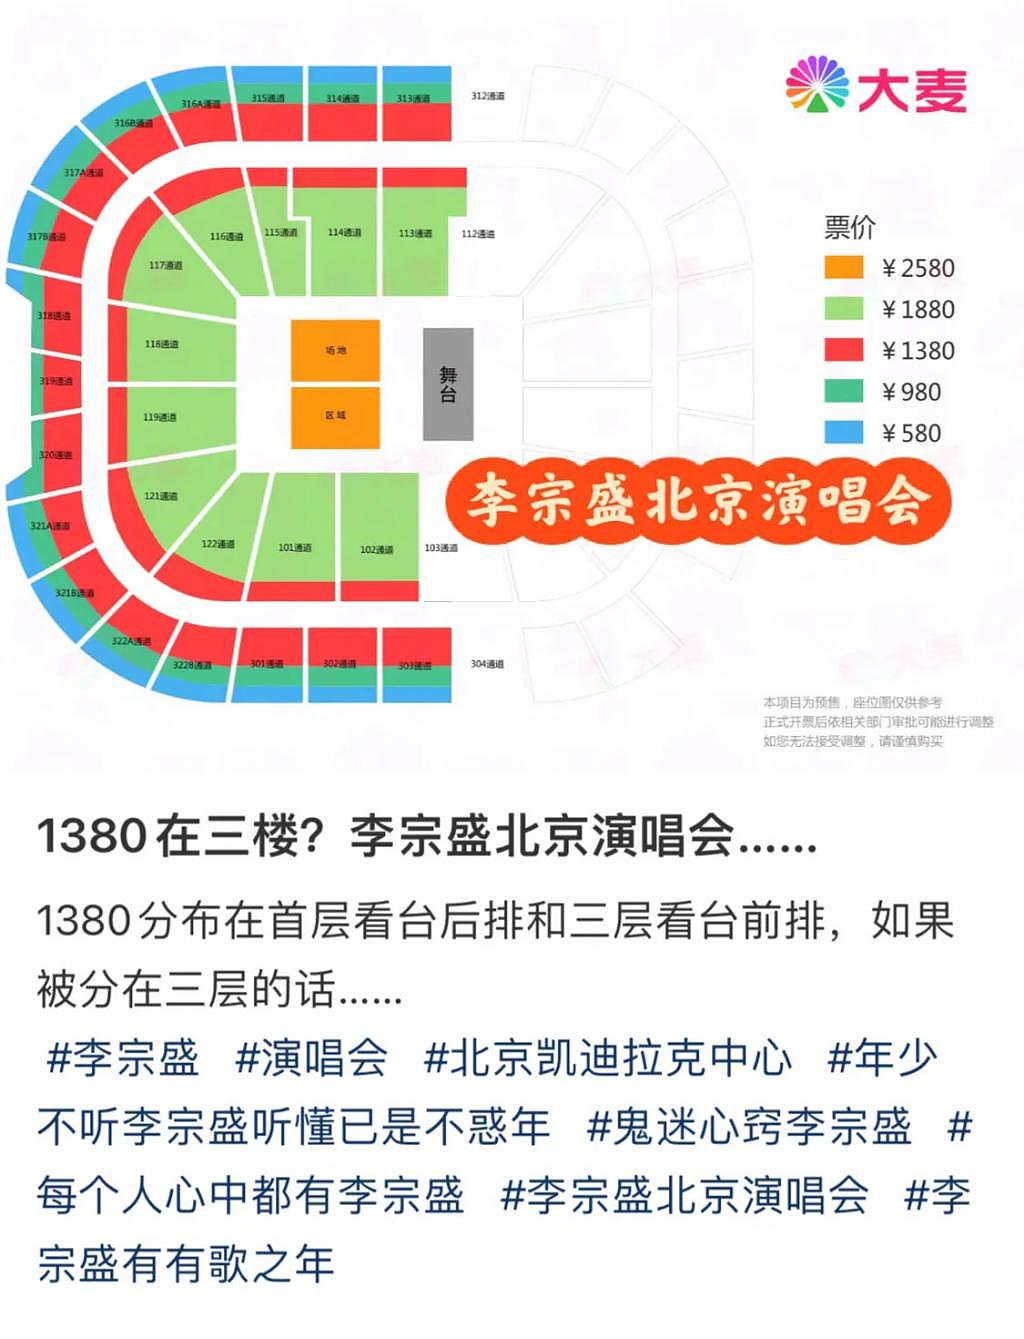 李宗盛北京演唱会遭网友吐槽 花了 1380 元 像“坐牢” - 4